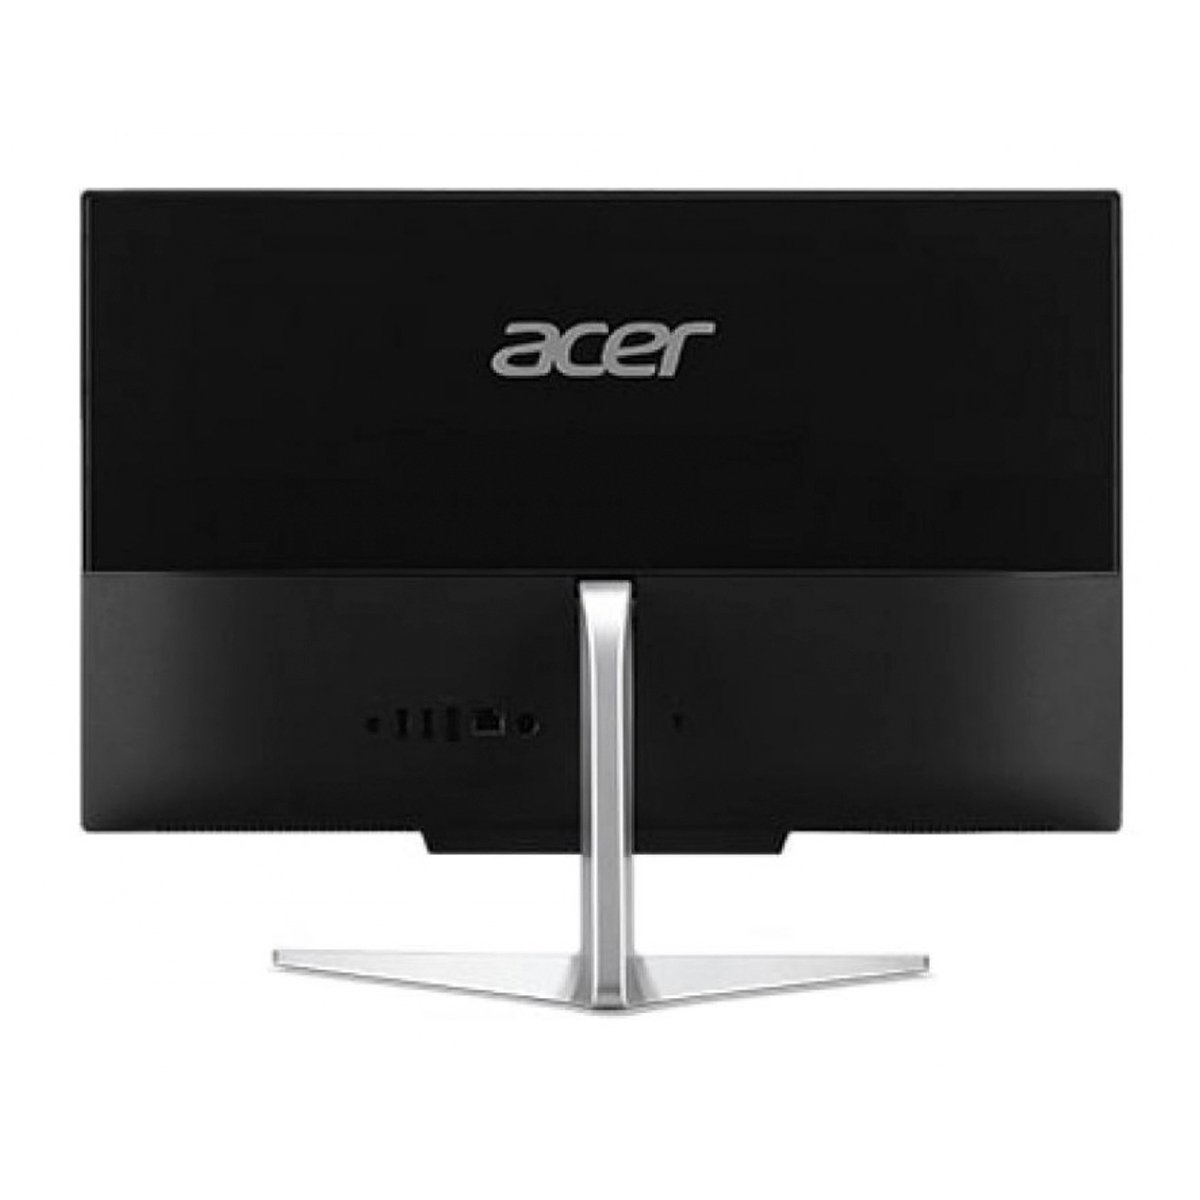 Acer Aspire C22-963(C22-963/ Ci3-1005G1) All-in-One Desktop,4GBRAM,1TB HDD,21"HD ,Windows 10